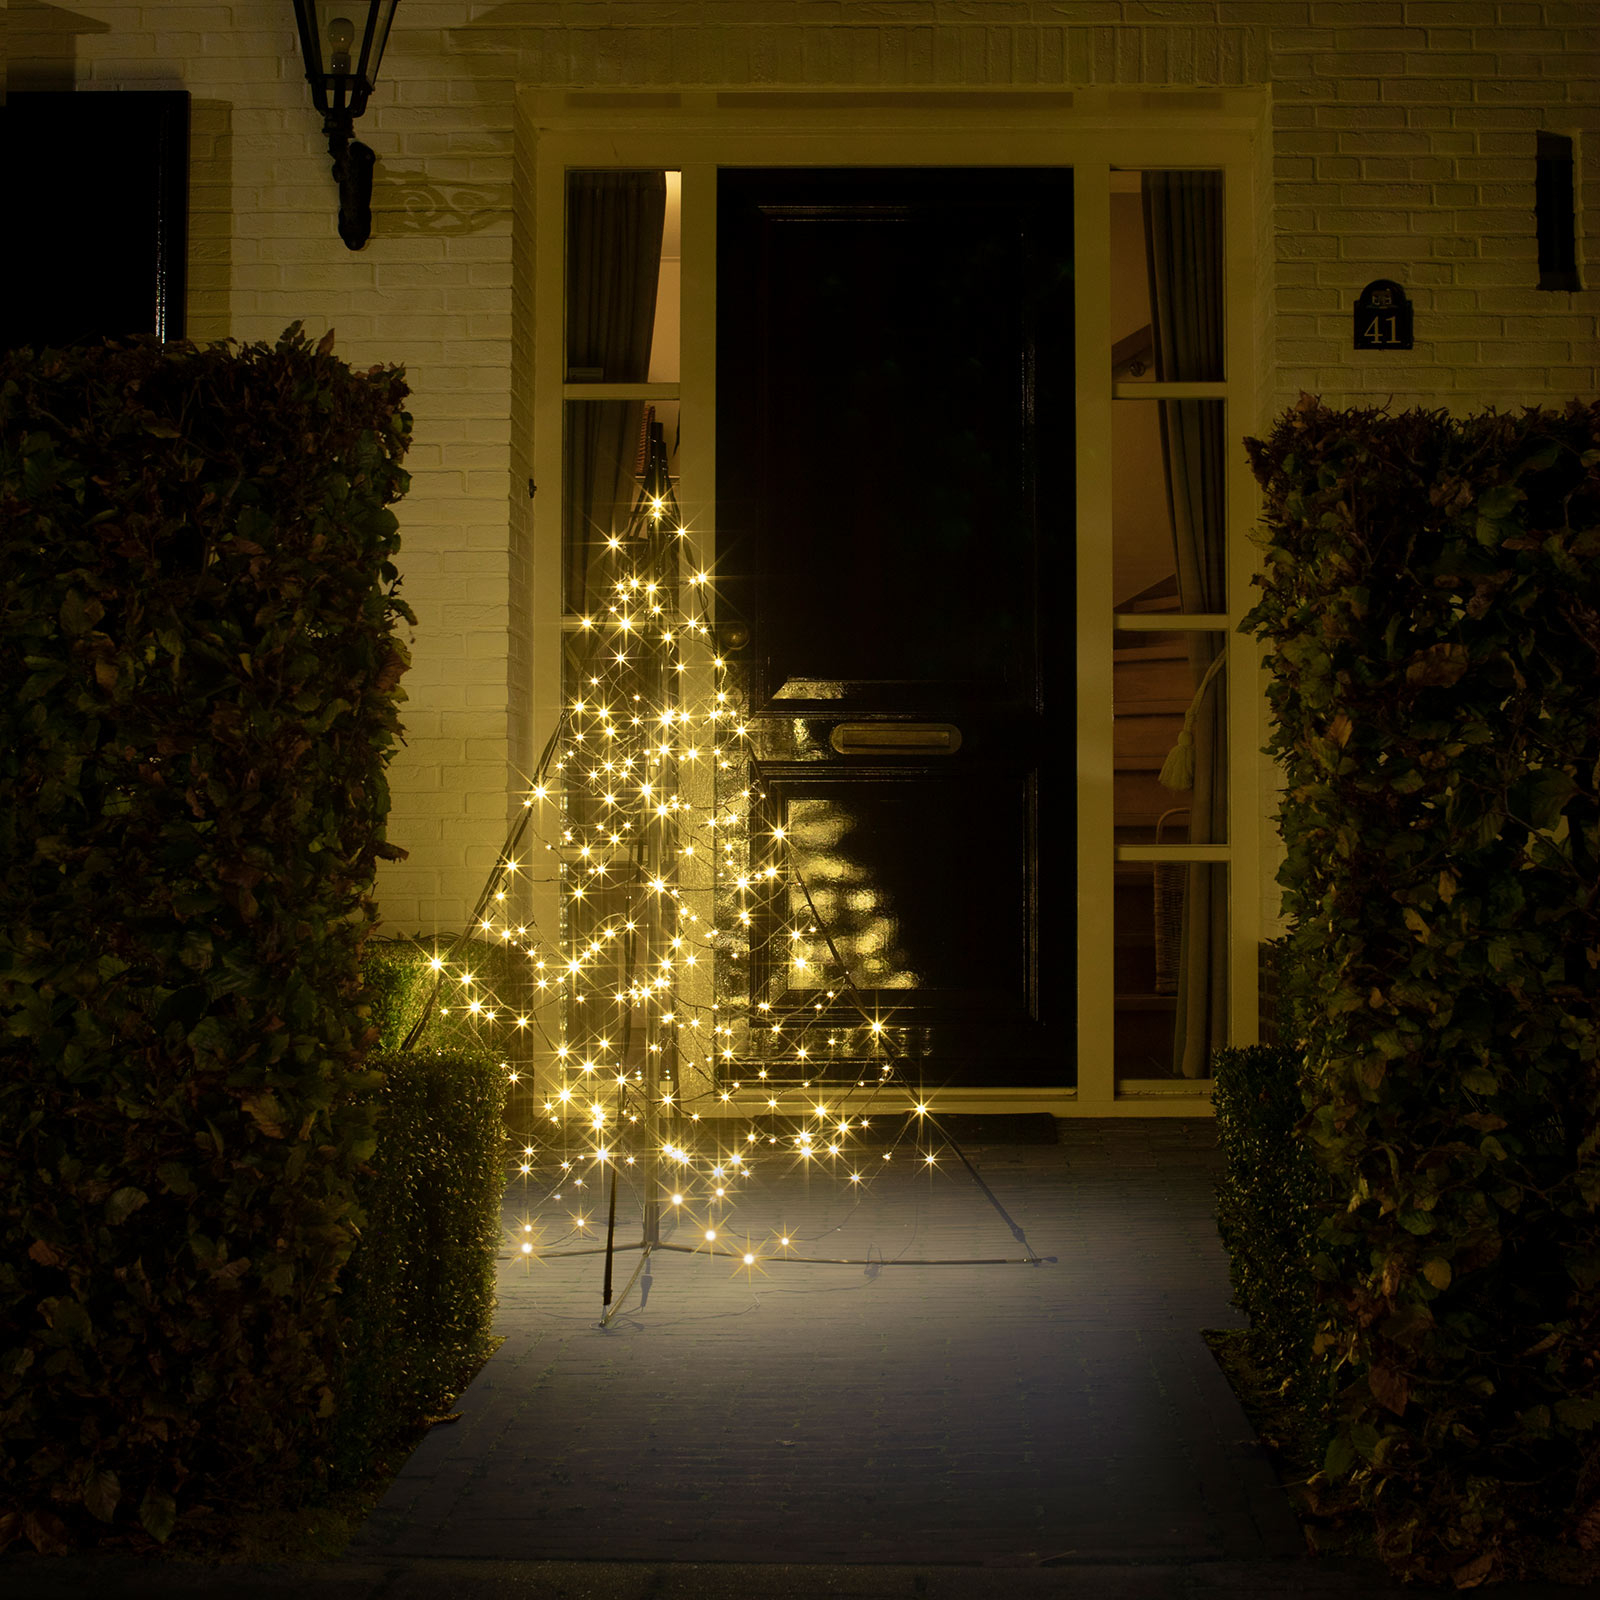 Vánoční stromek Fairybell s tyčí, 240 LED diod 150 cm